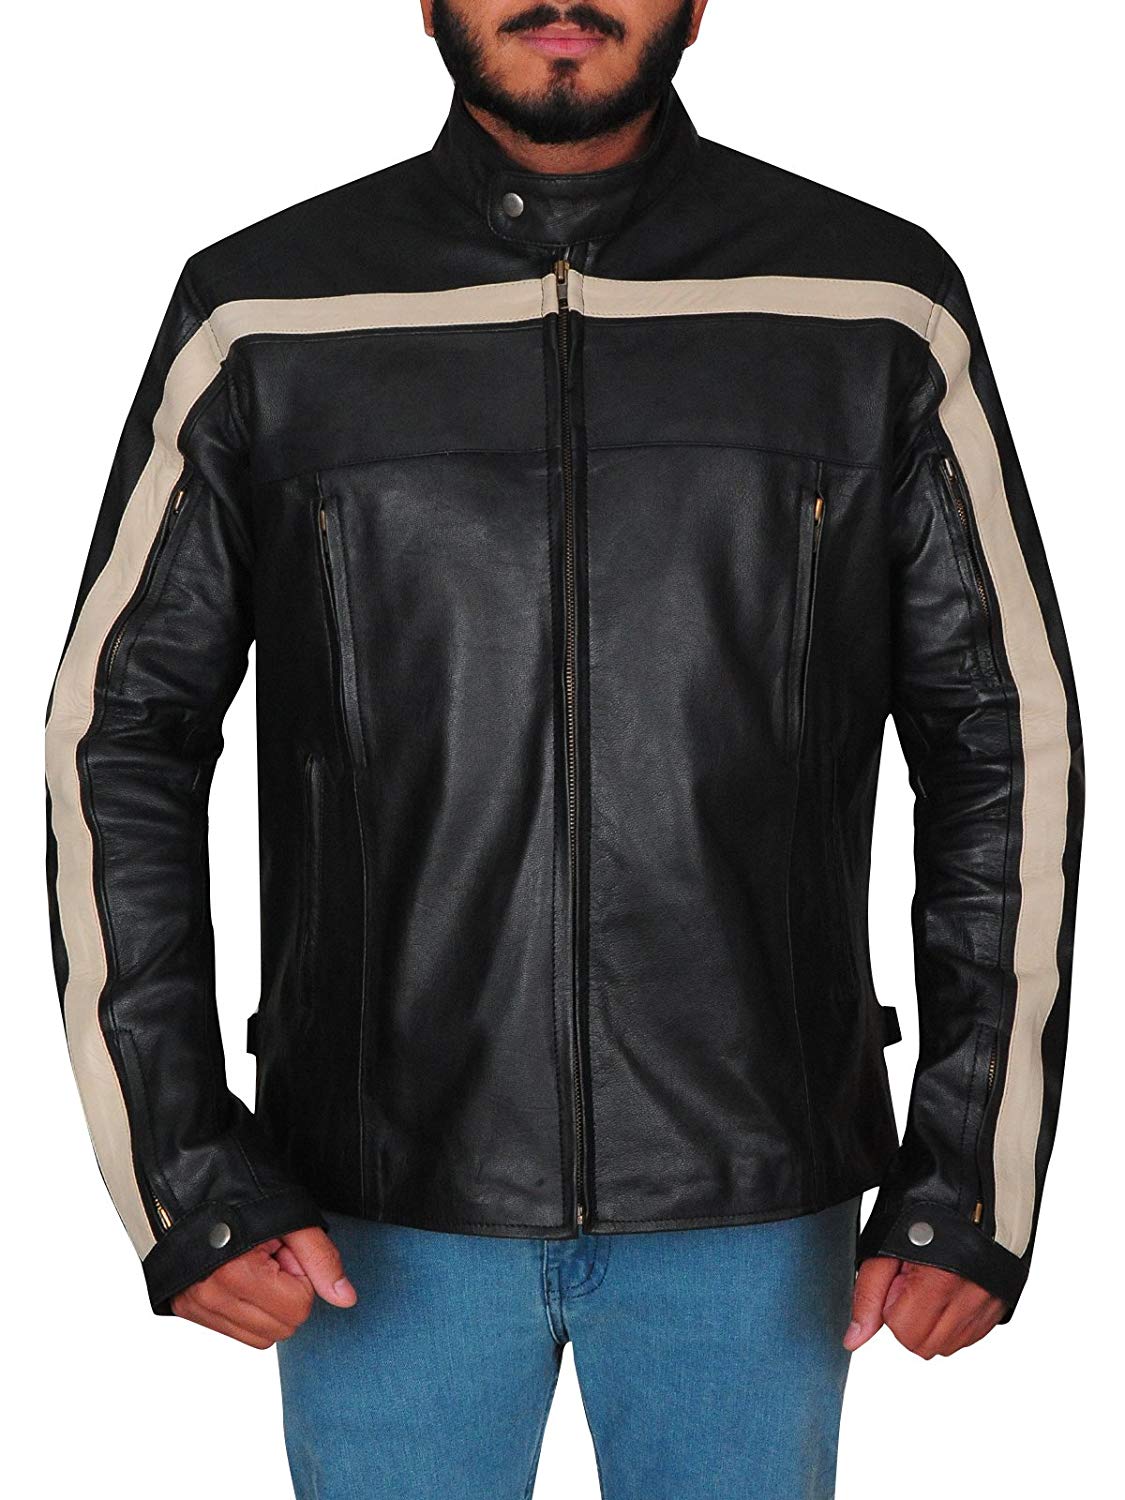 Joe Lambskin Leather Old School Strip Motorcycle Jacket | Right Jackets